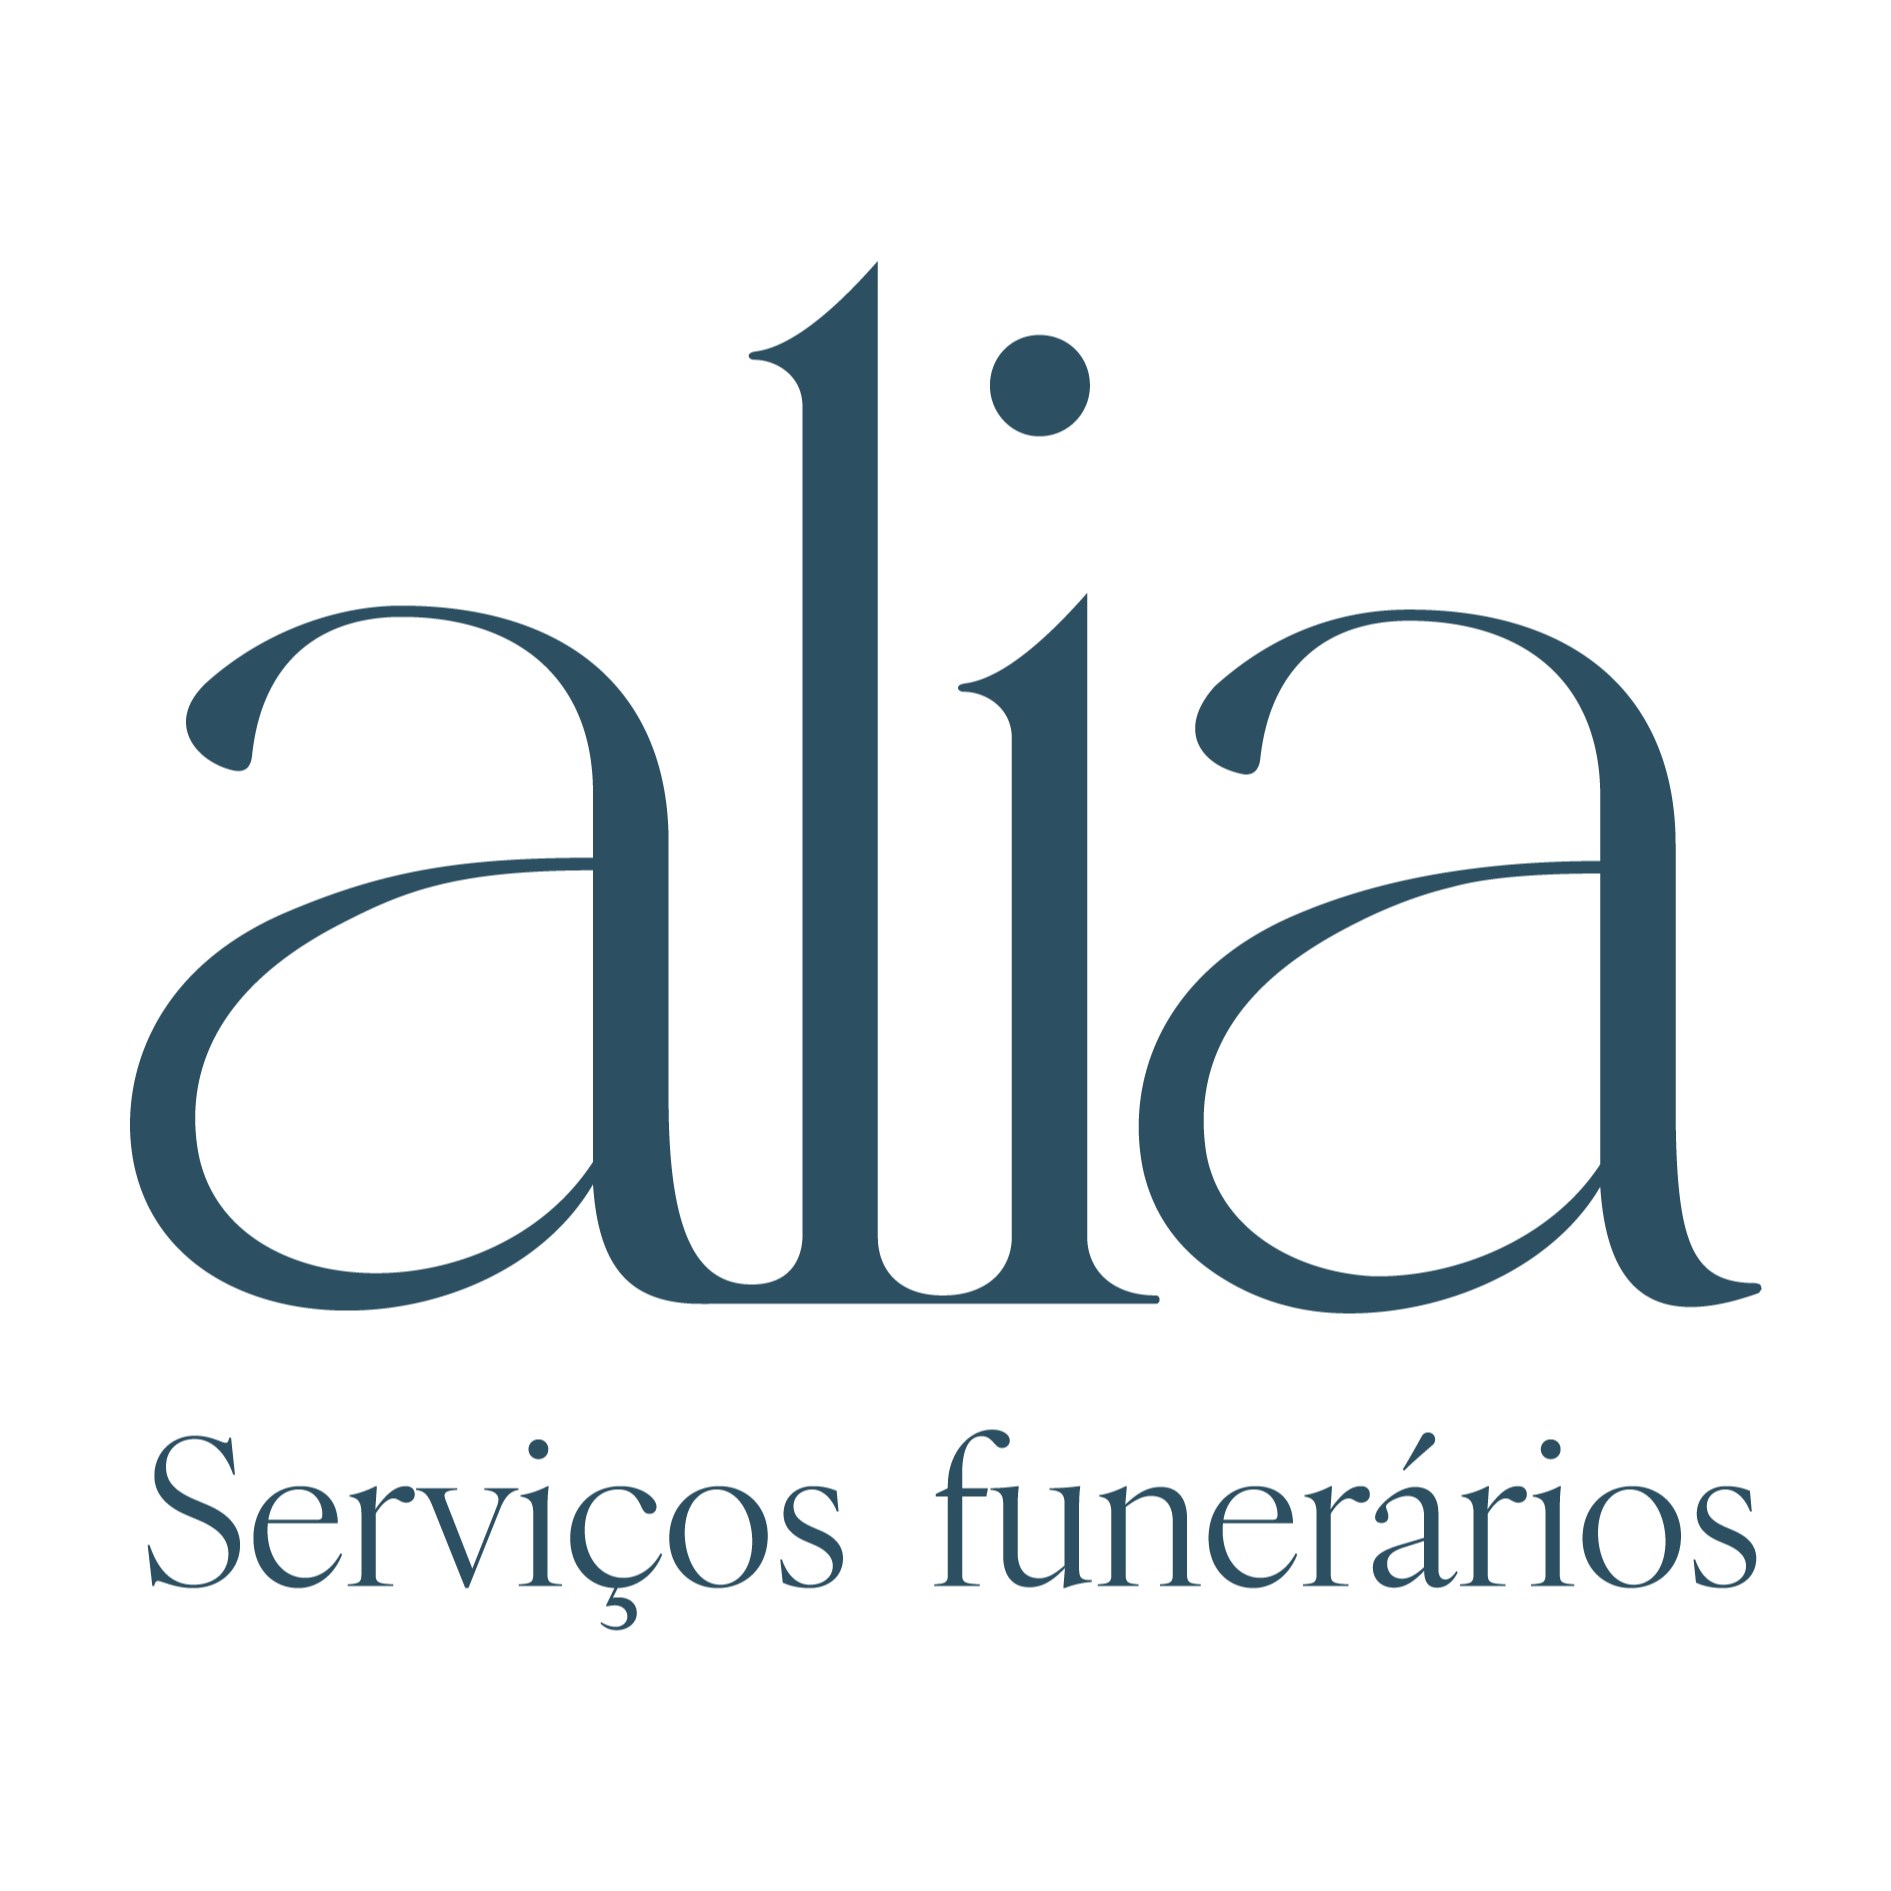 Alia Serviços Funerários - Funeral Home - Porto - 800 786 001 Portugal | ShowMeLocal.com